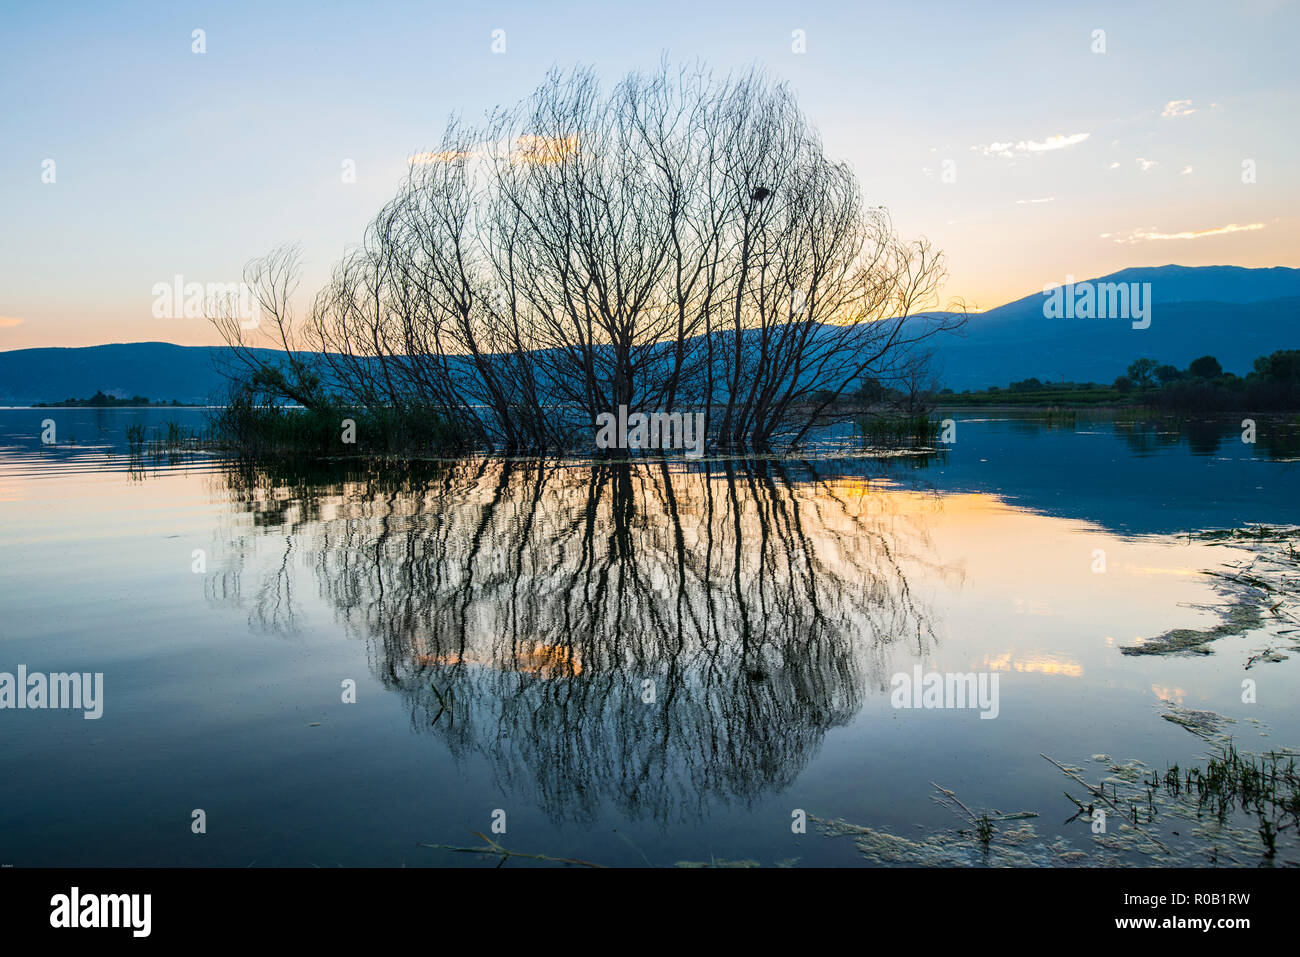 La Grèce. Parfait reflet d'un arbre dans un lac dans la lumière du soir Banque D'Images